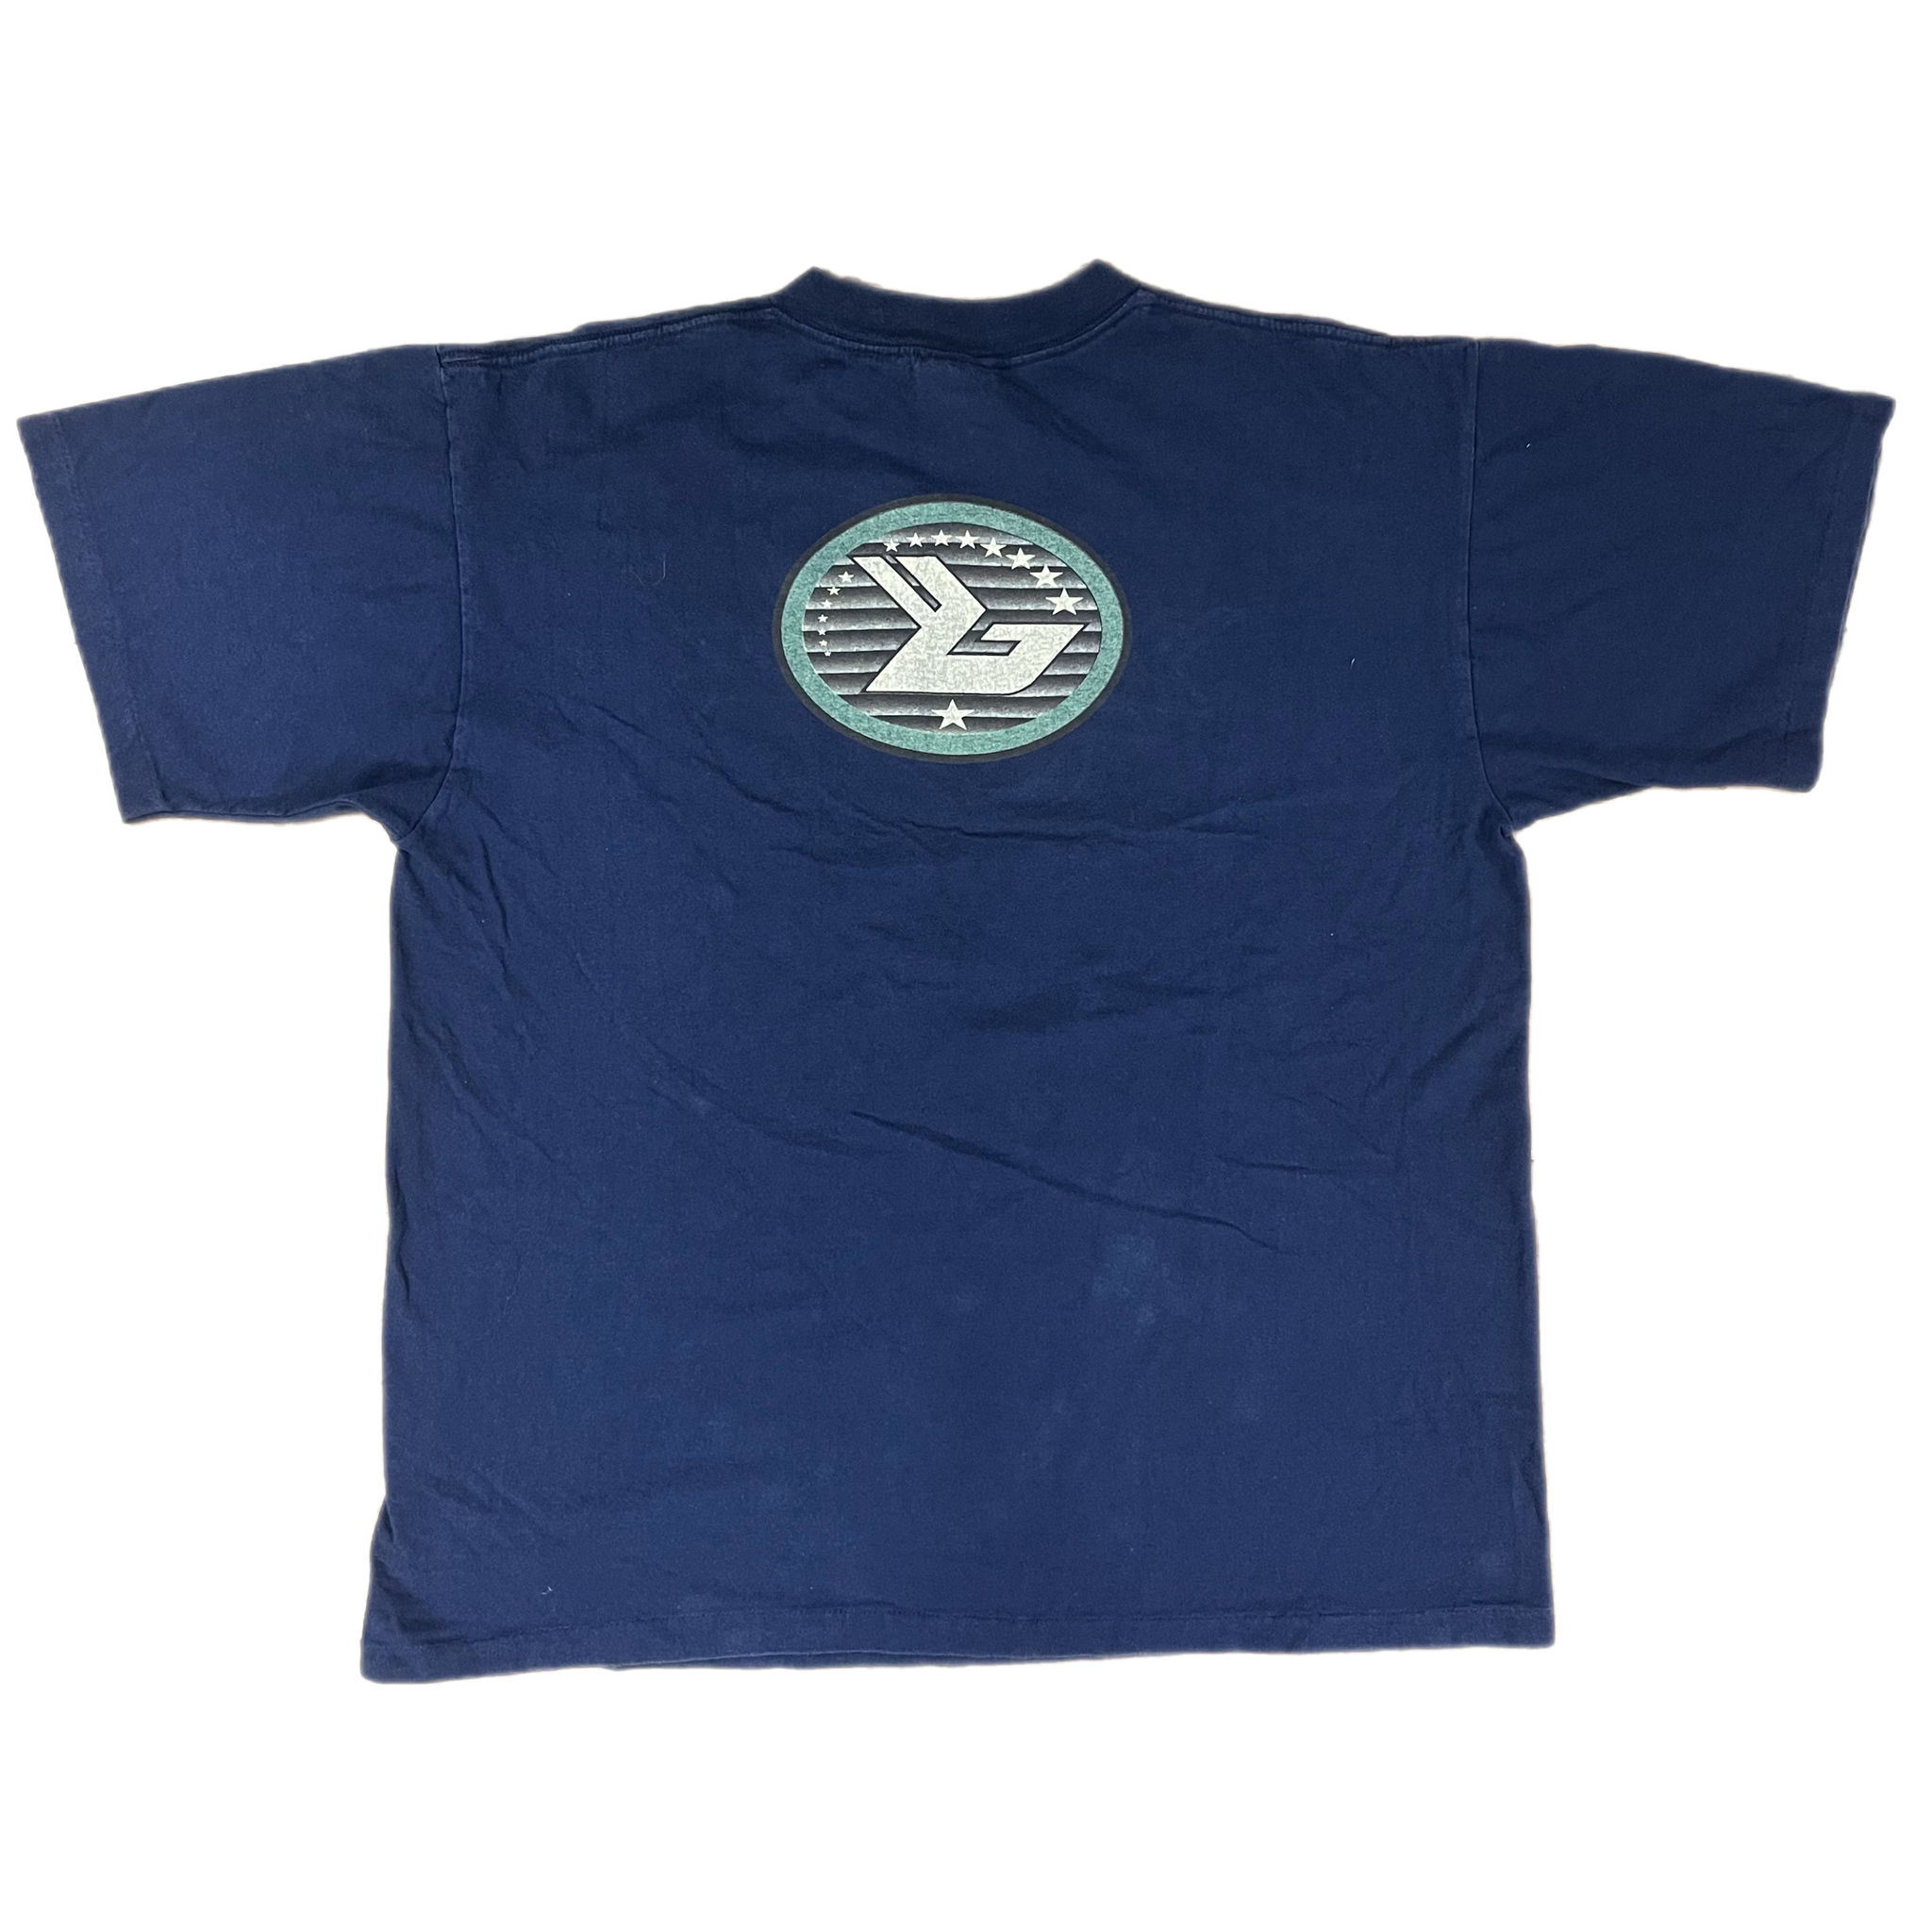 Bjork (ビョーク) debut Tシャツ XL - Tシャツ/カットソー(半袖/袖なし)